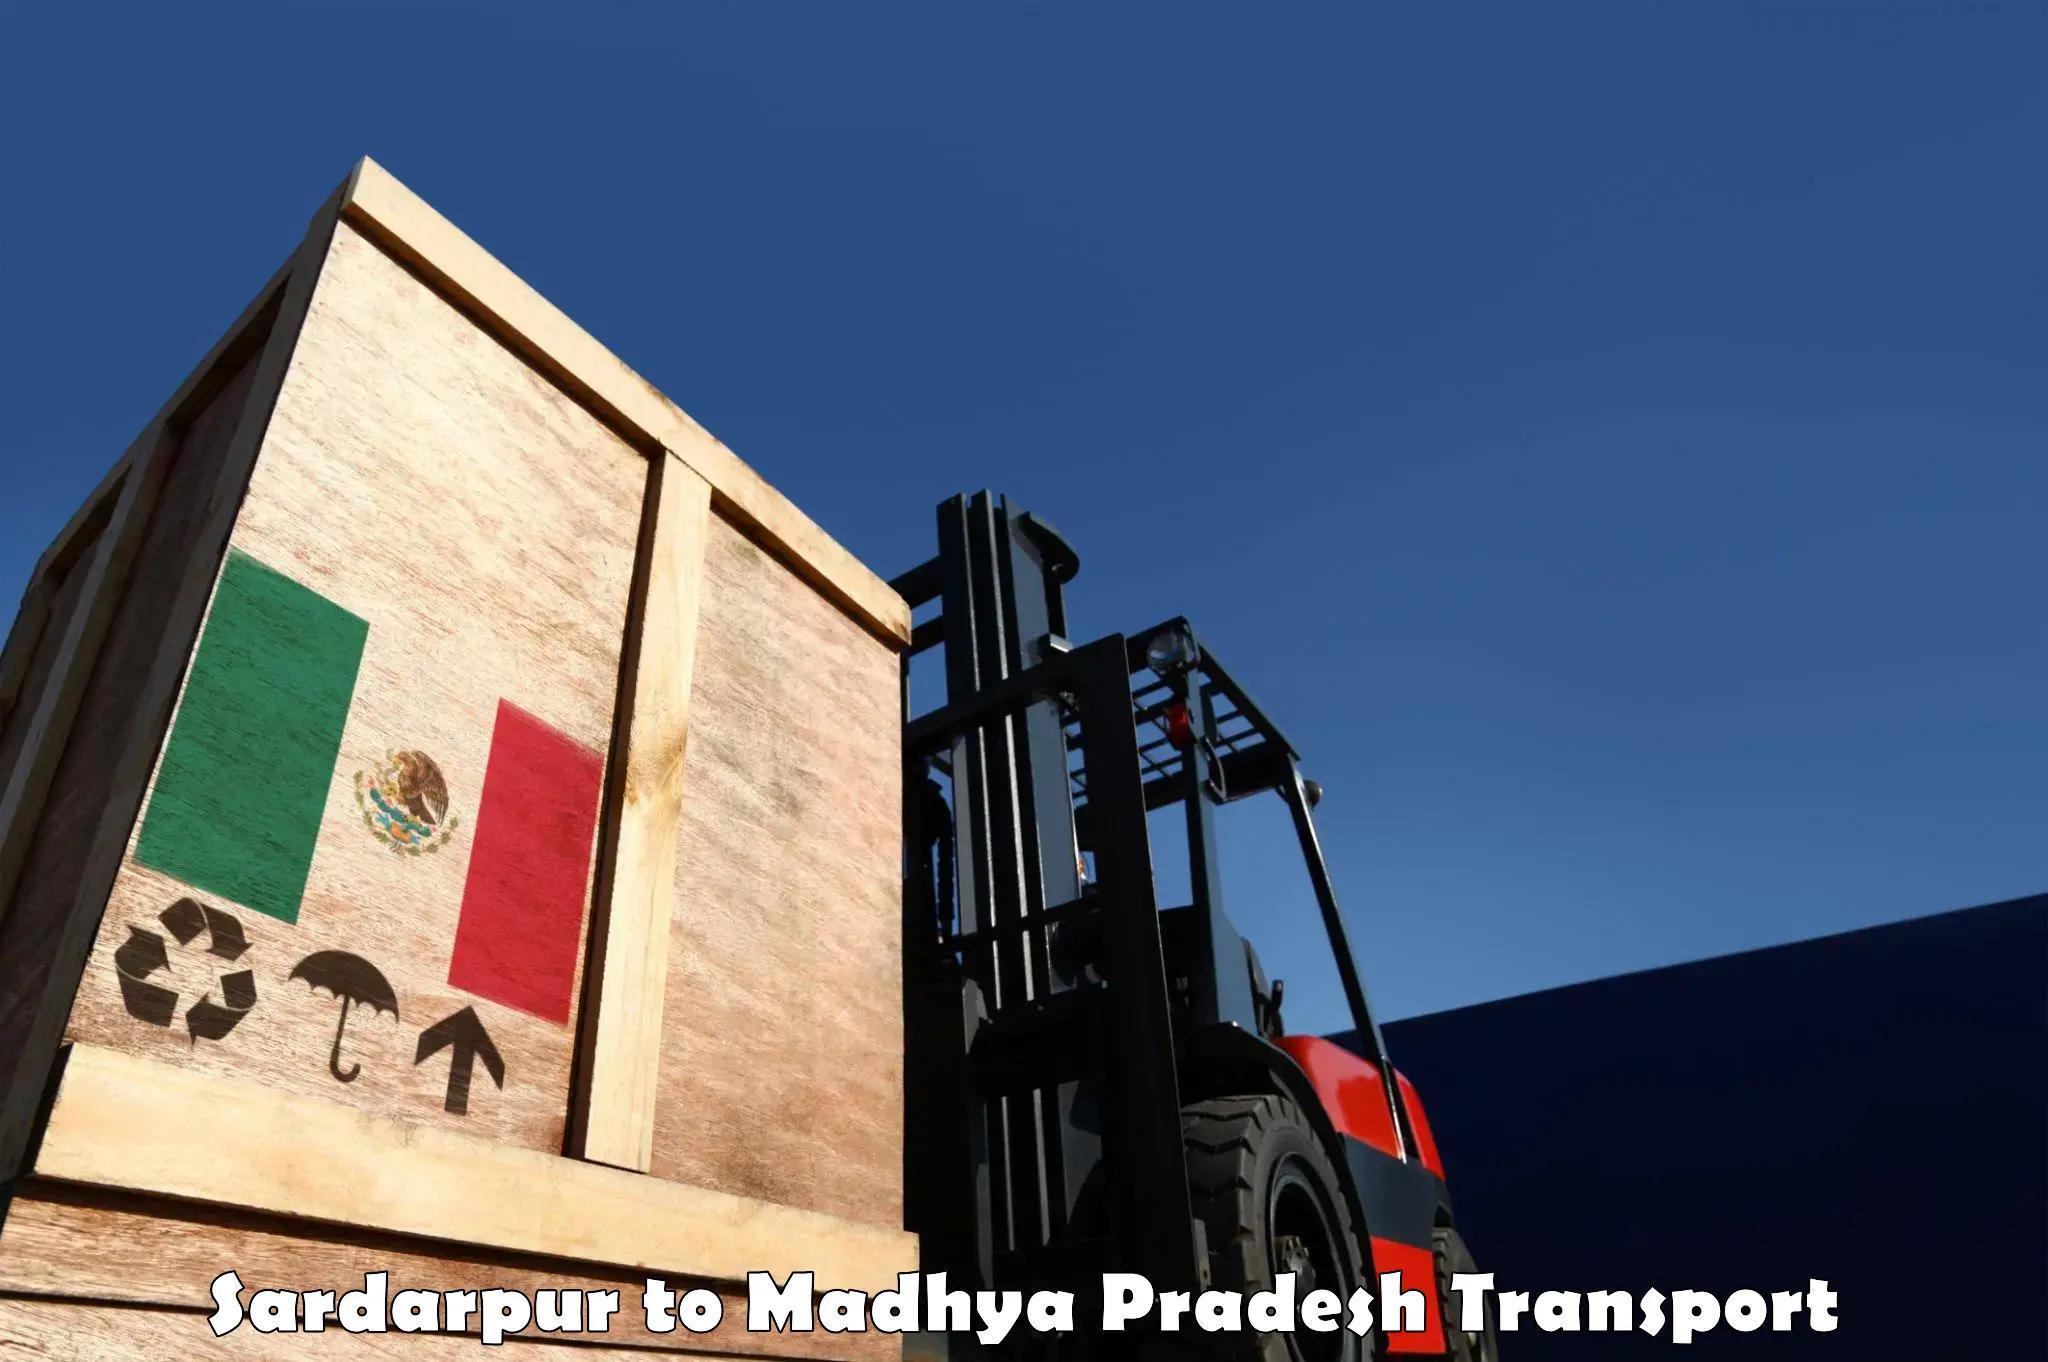 Online transport service Sardarpur to Raghogarh